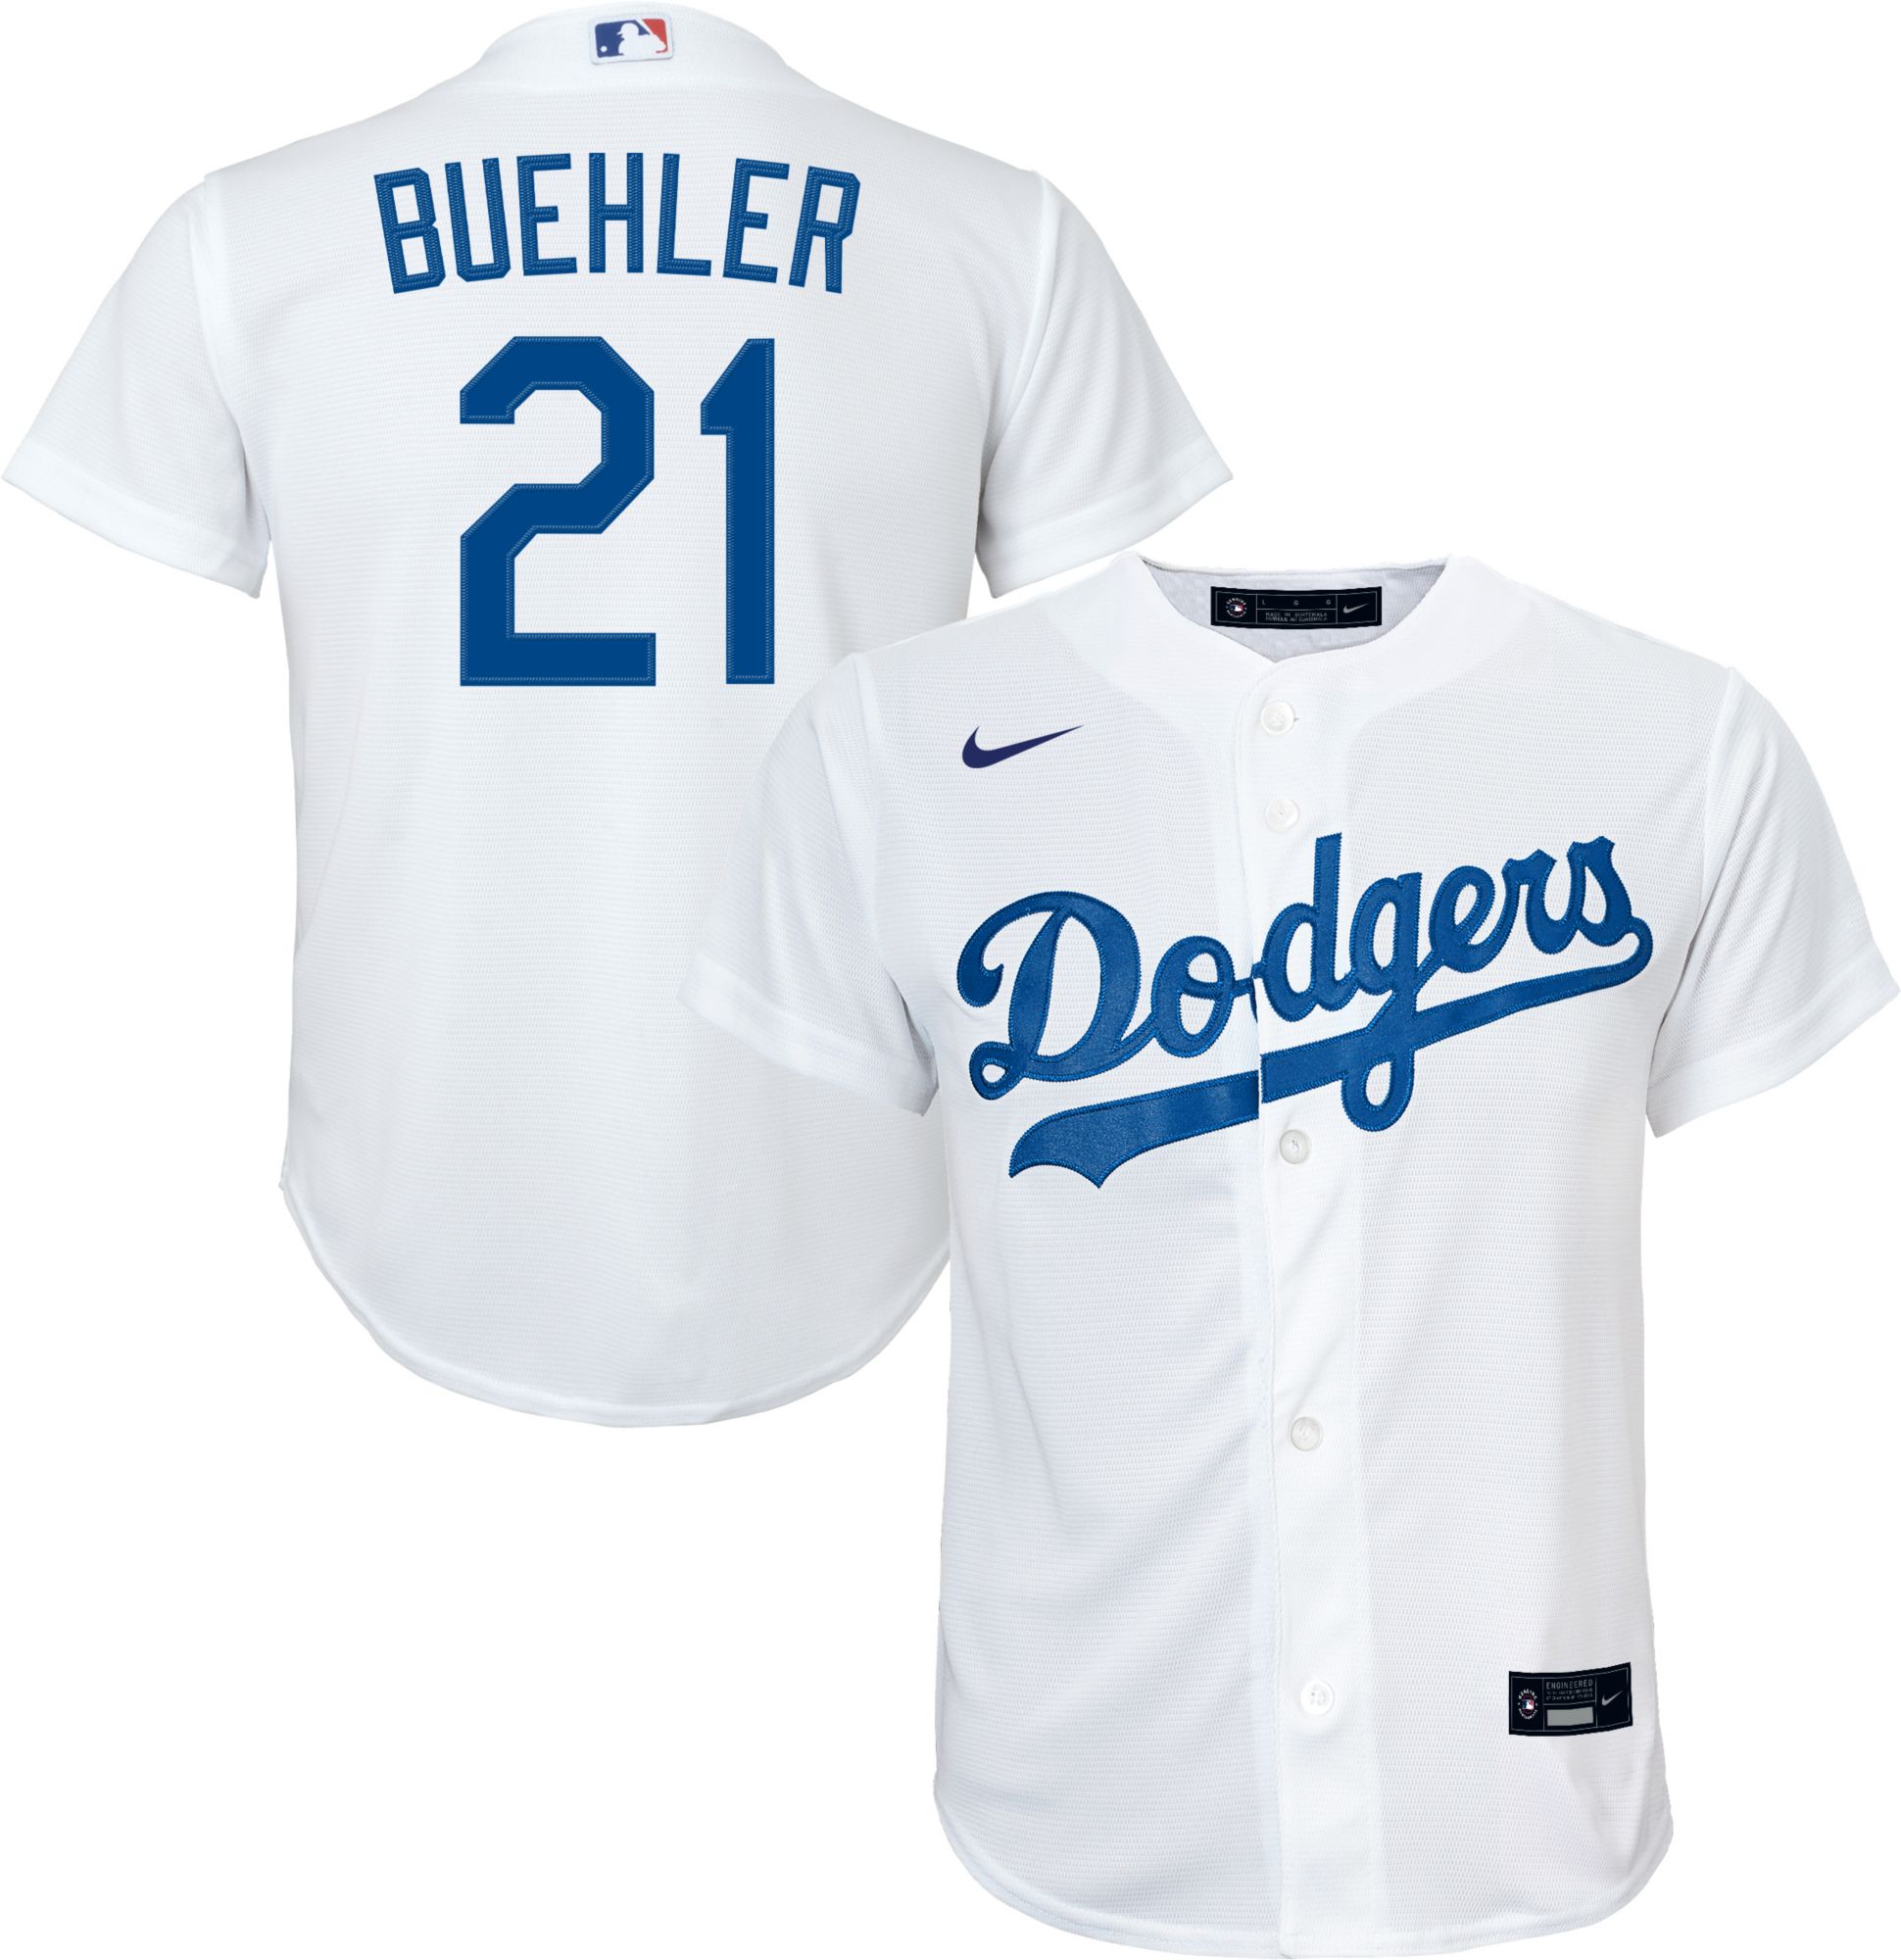 Nike Men's Los Angeles Dodgers Walker Buehler #21 Blue T-Shirt